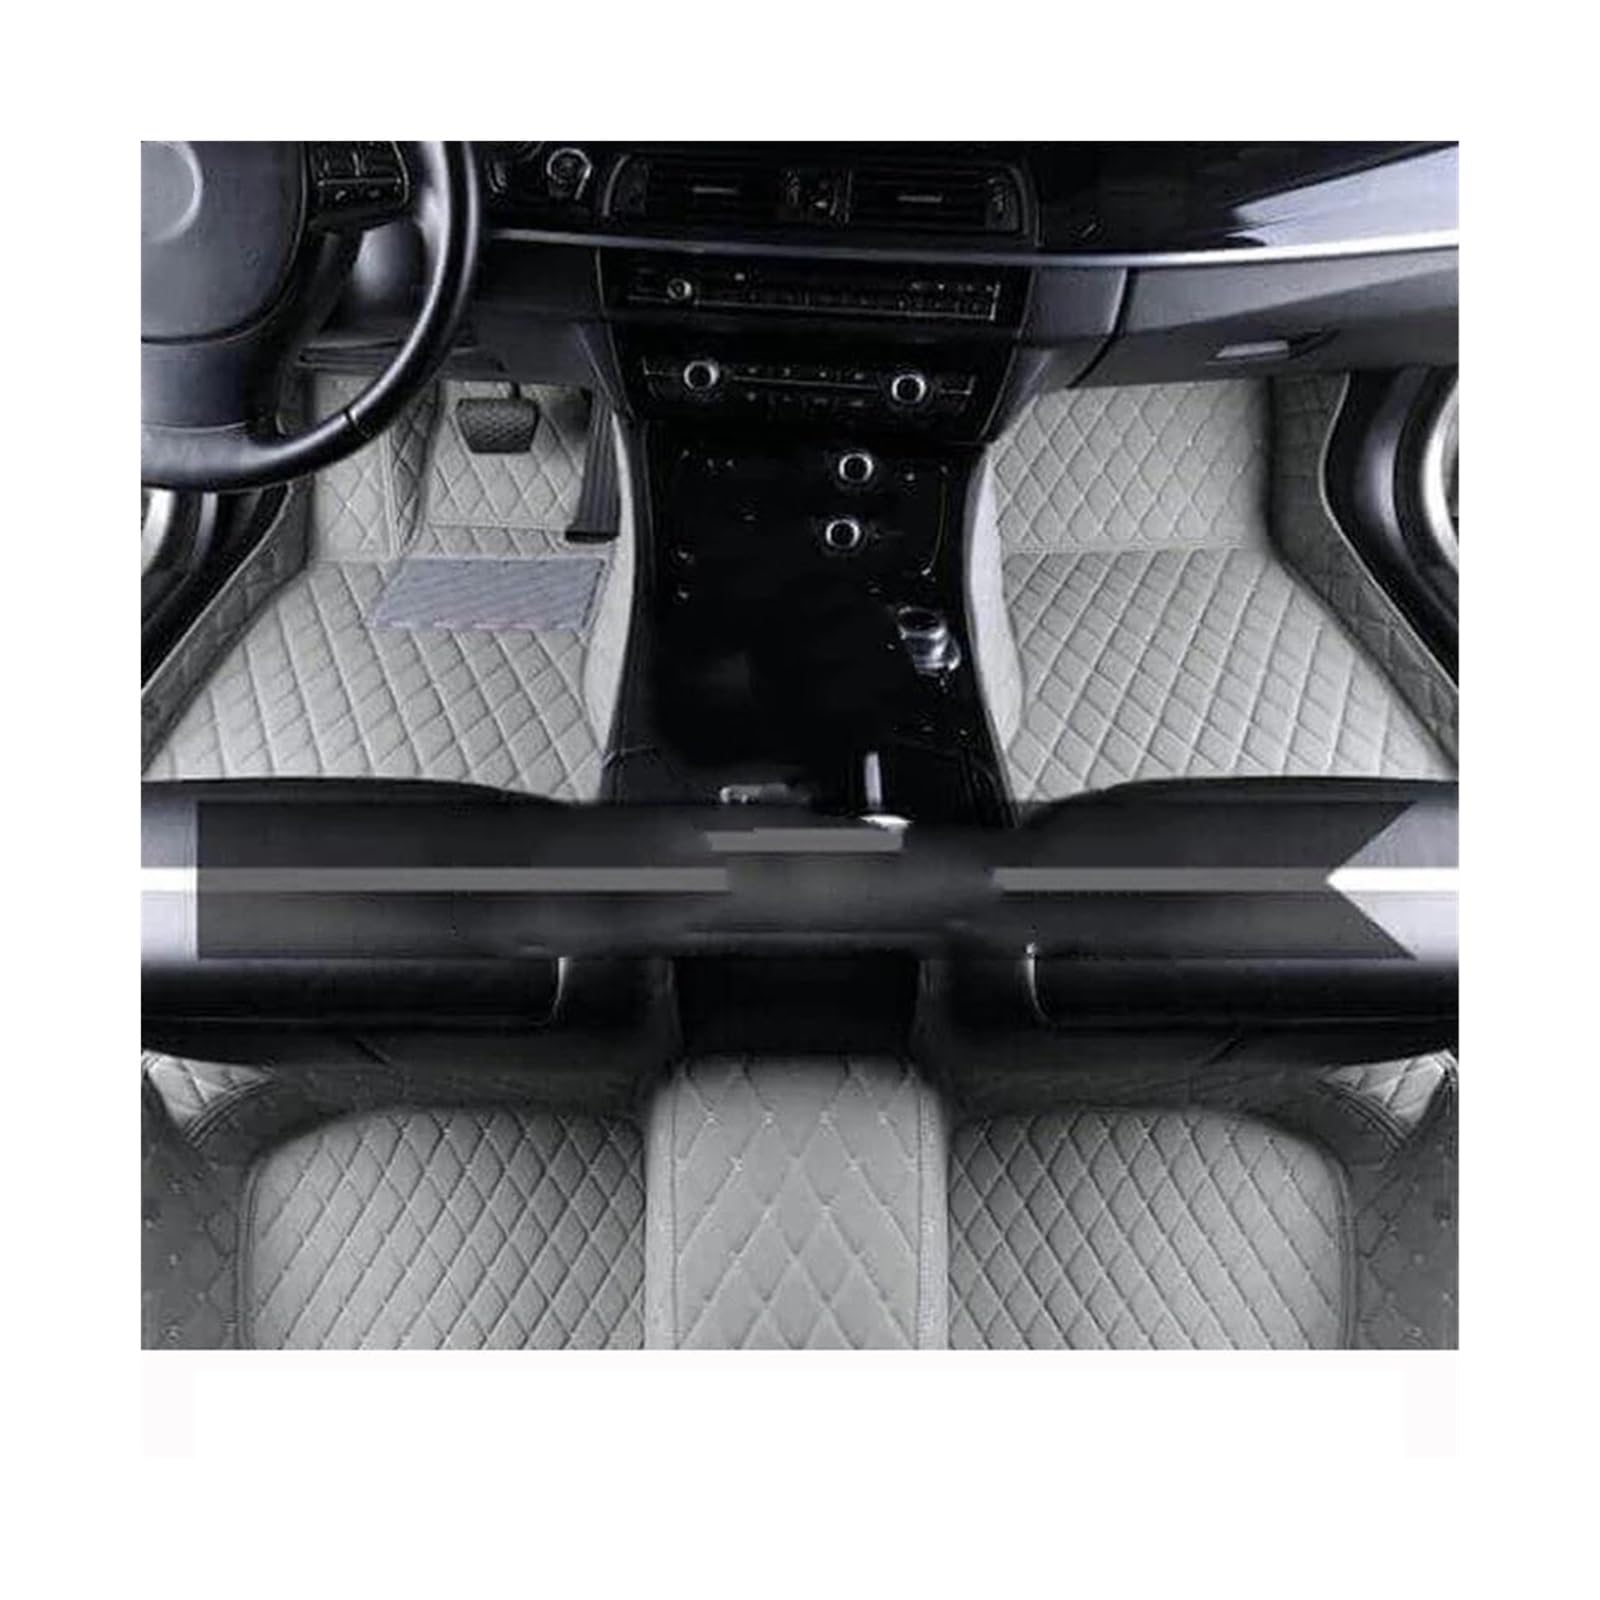 VIYOLI Für N&issan Für Juke F15 2013 2014 2015 2016 Auto Fußmatten Benutzerdefinierte Auto Leder Fuß Pads Teppich Abdeckung Auto Bodenbelag Teppich(5,LEFT Hand DRIVE) von VIYOLI